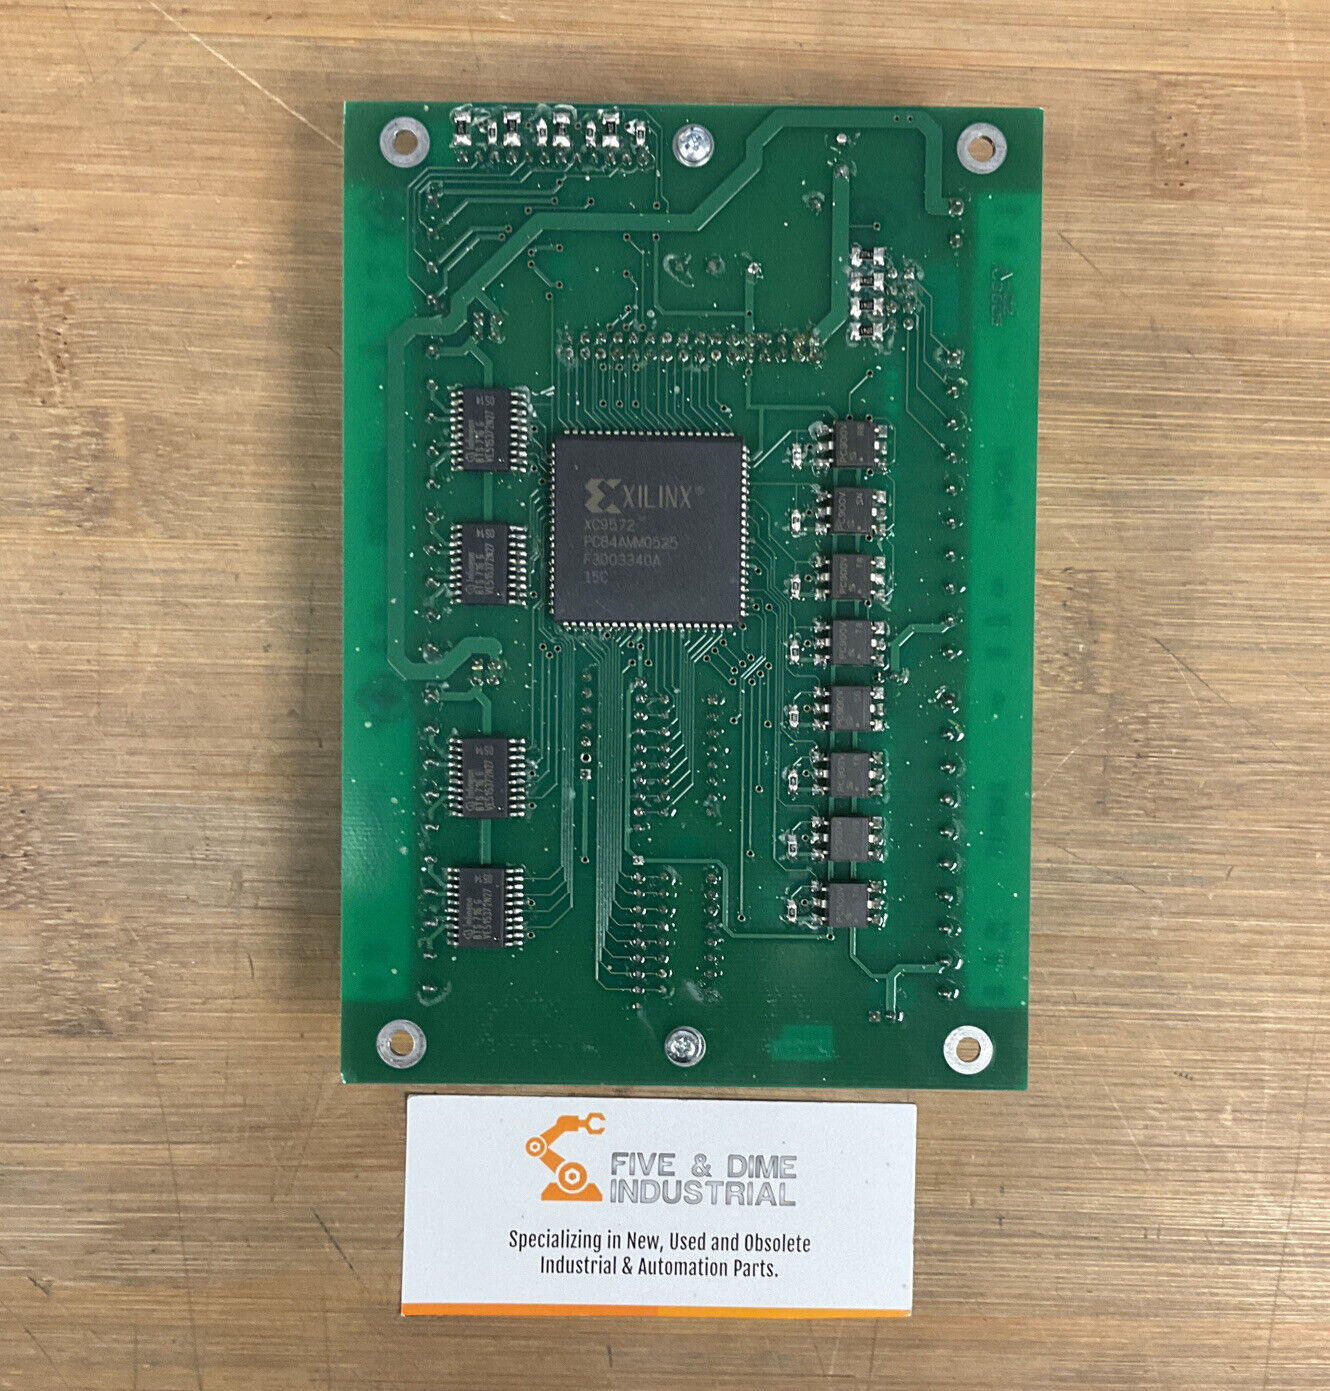 ABB Autoquip JG-1004 Dual Encoder Input Divider Board (CB101)